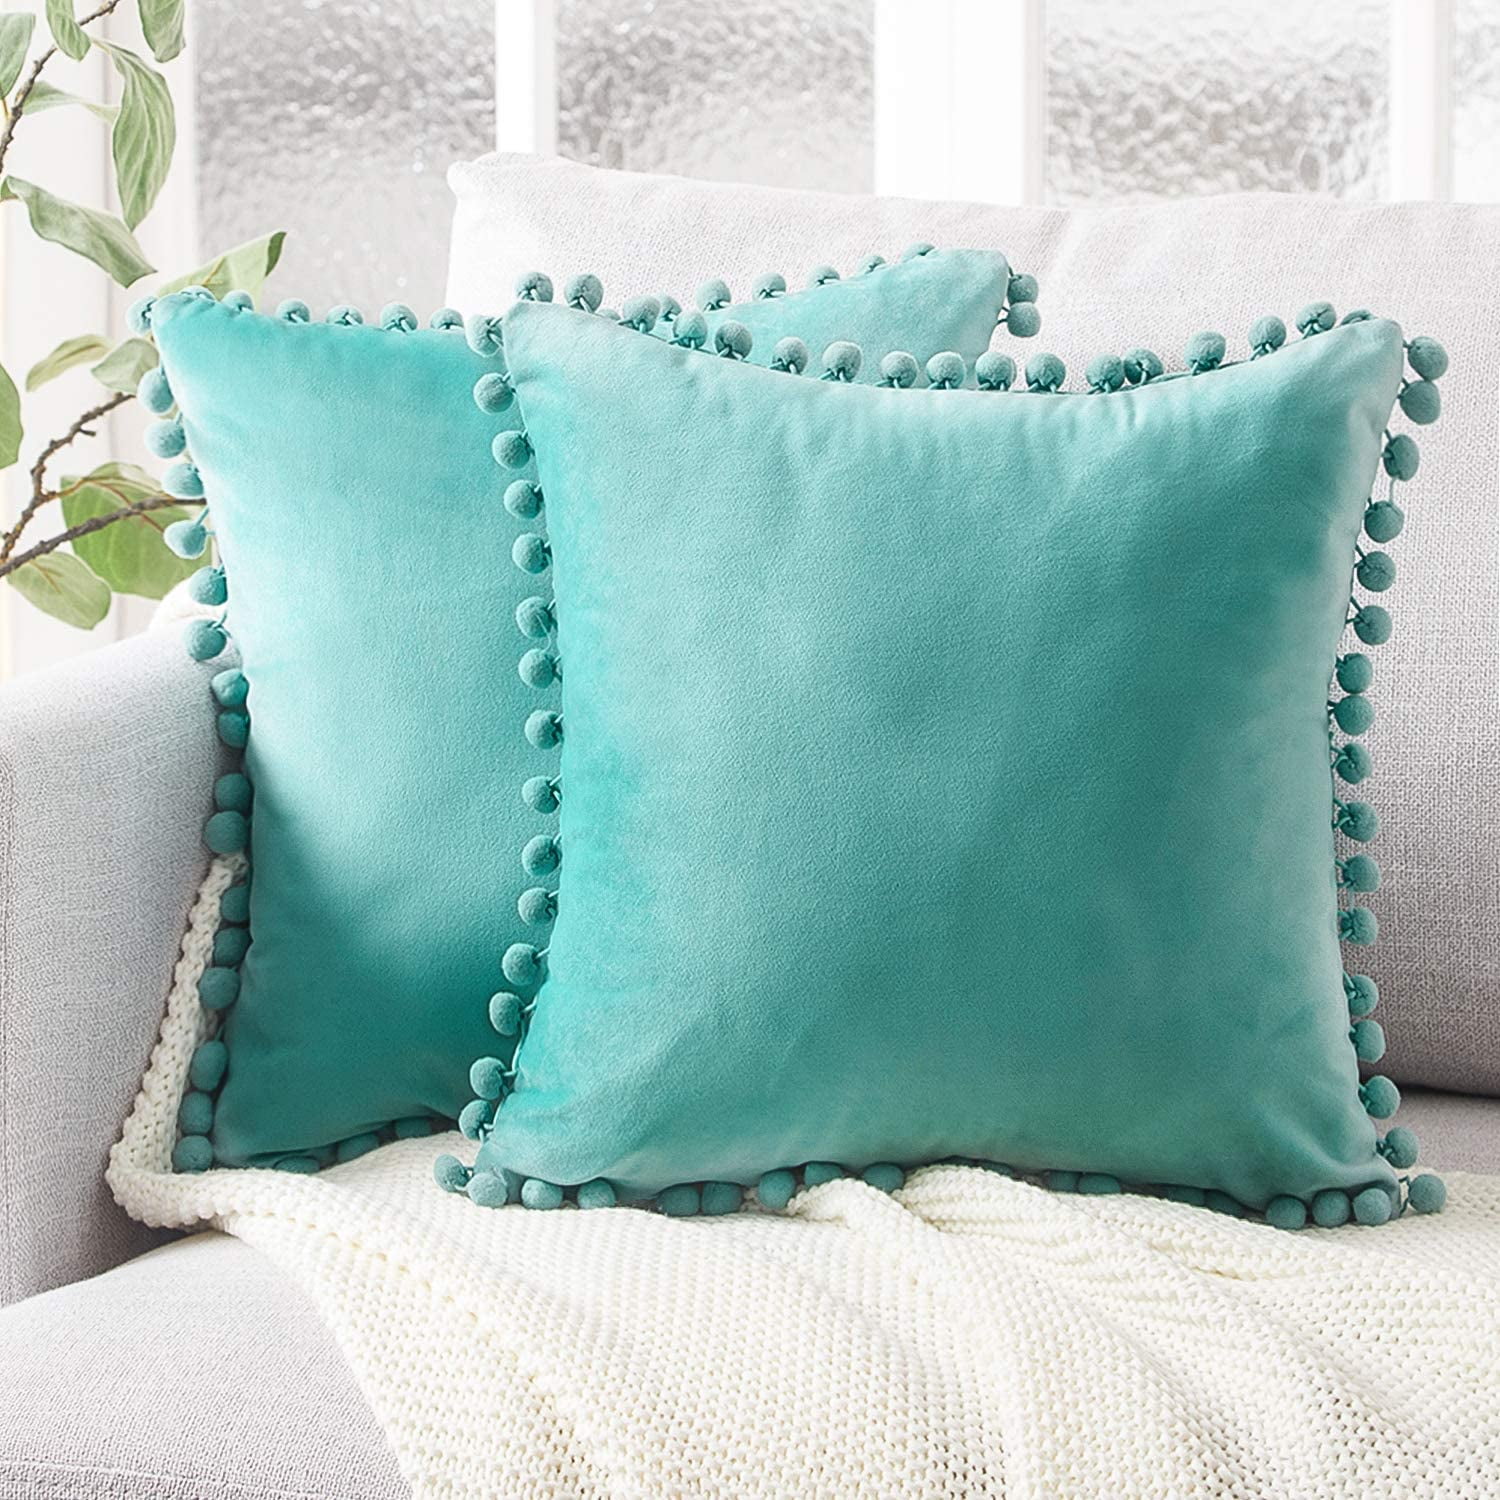 US Velvet Cushion Cover Pom Poms Home Decorative Sofa Car Throw Pillow Case 18"